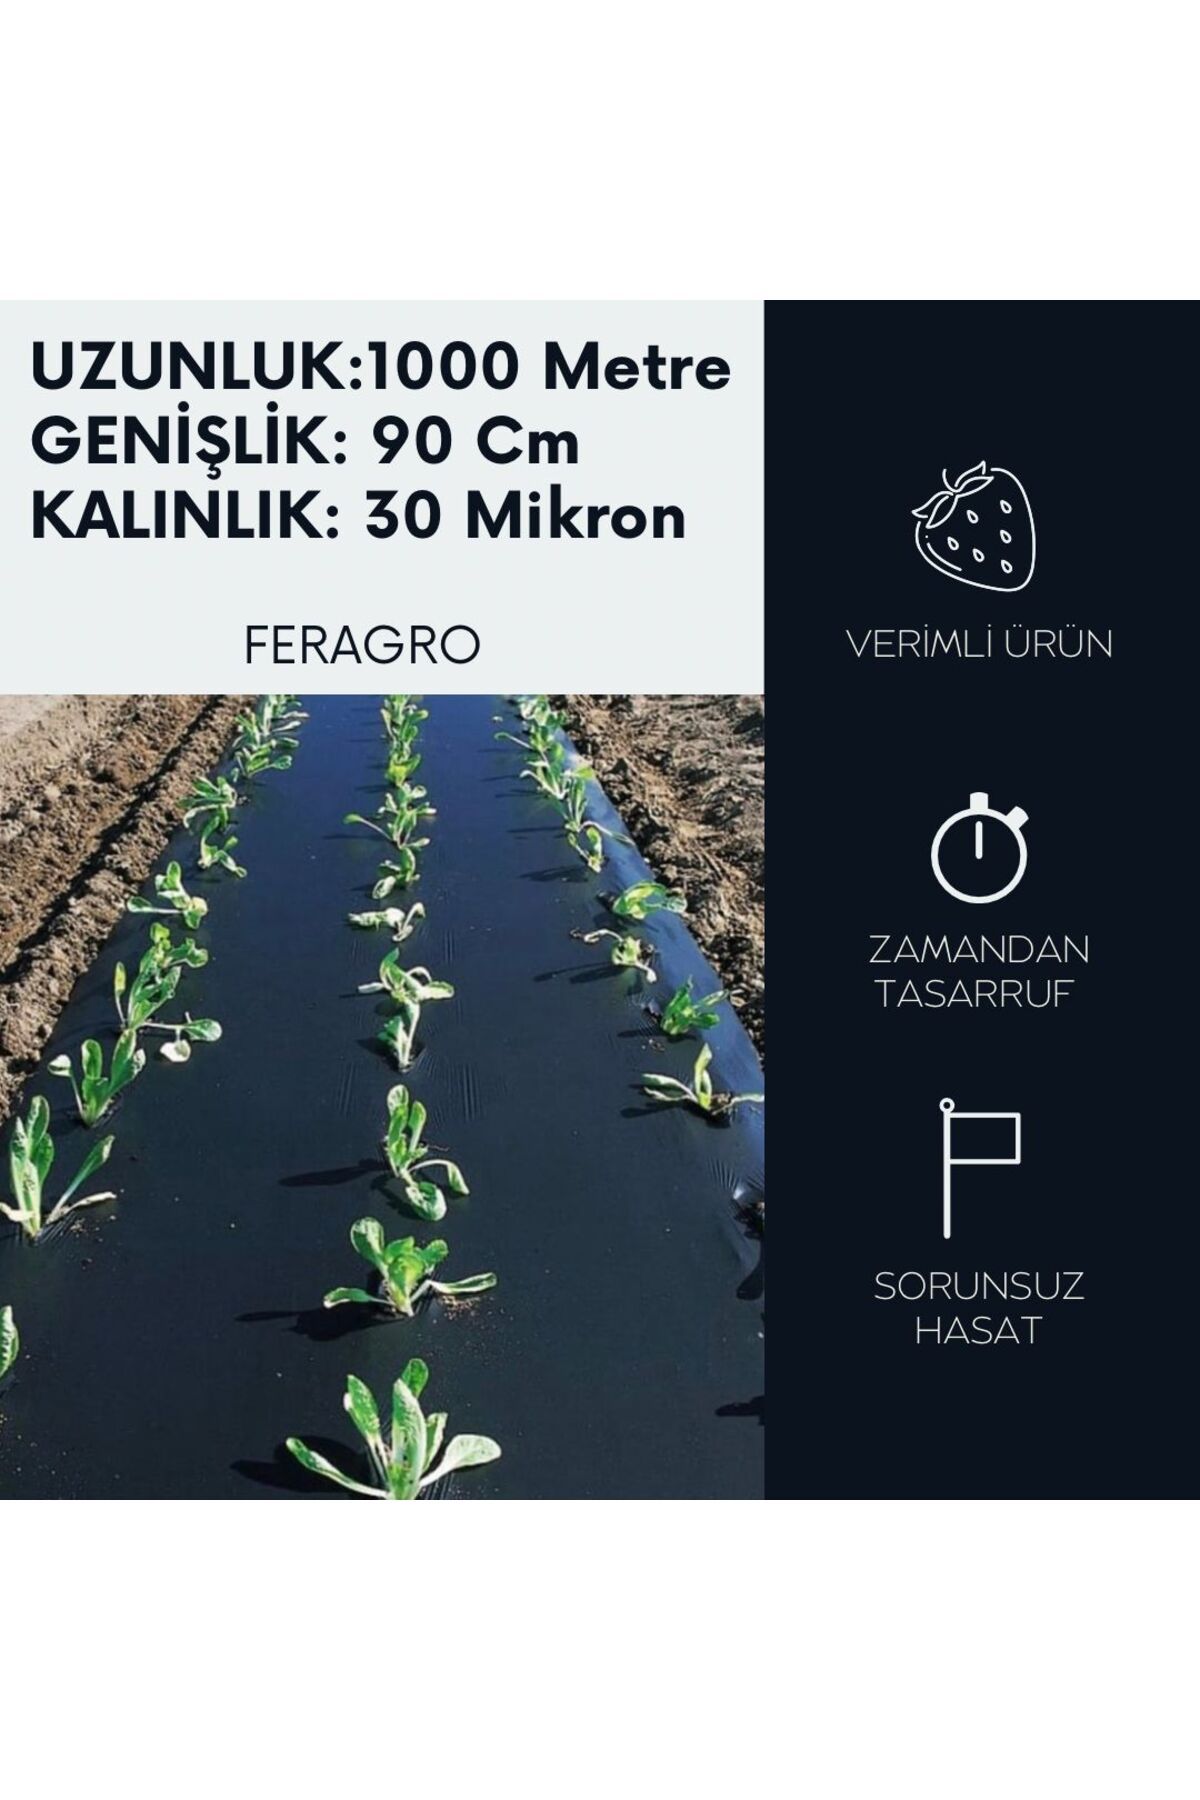 Feragro Agrofer Malç Naylonu- Uzunluk 1000 Metre/genişlik 90 Cm/kalınlık 30 Mikron(ÇİLEK NAYLONU)